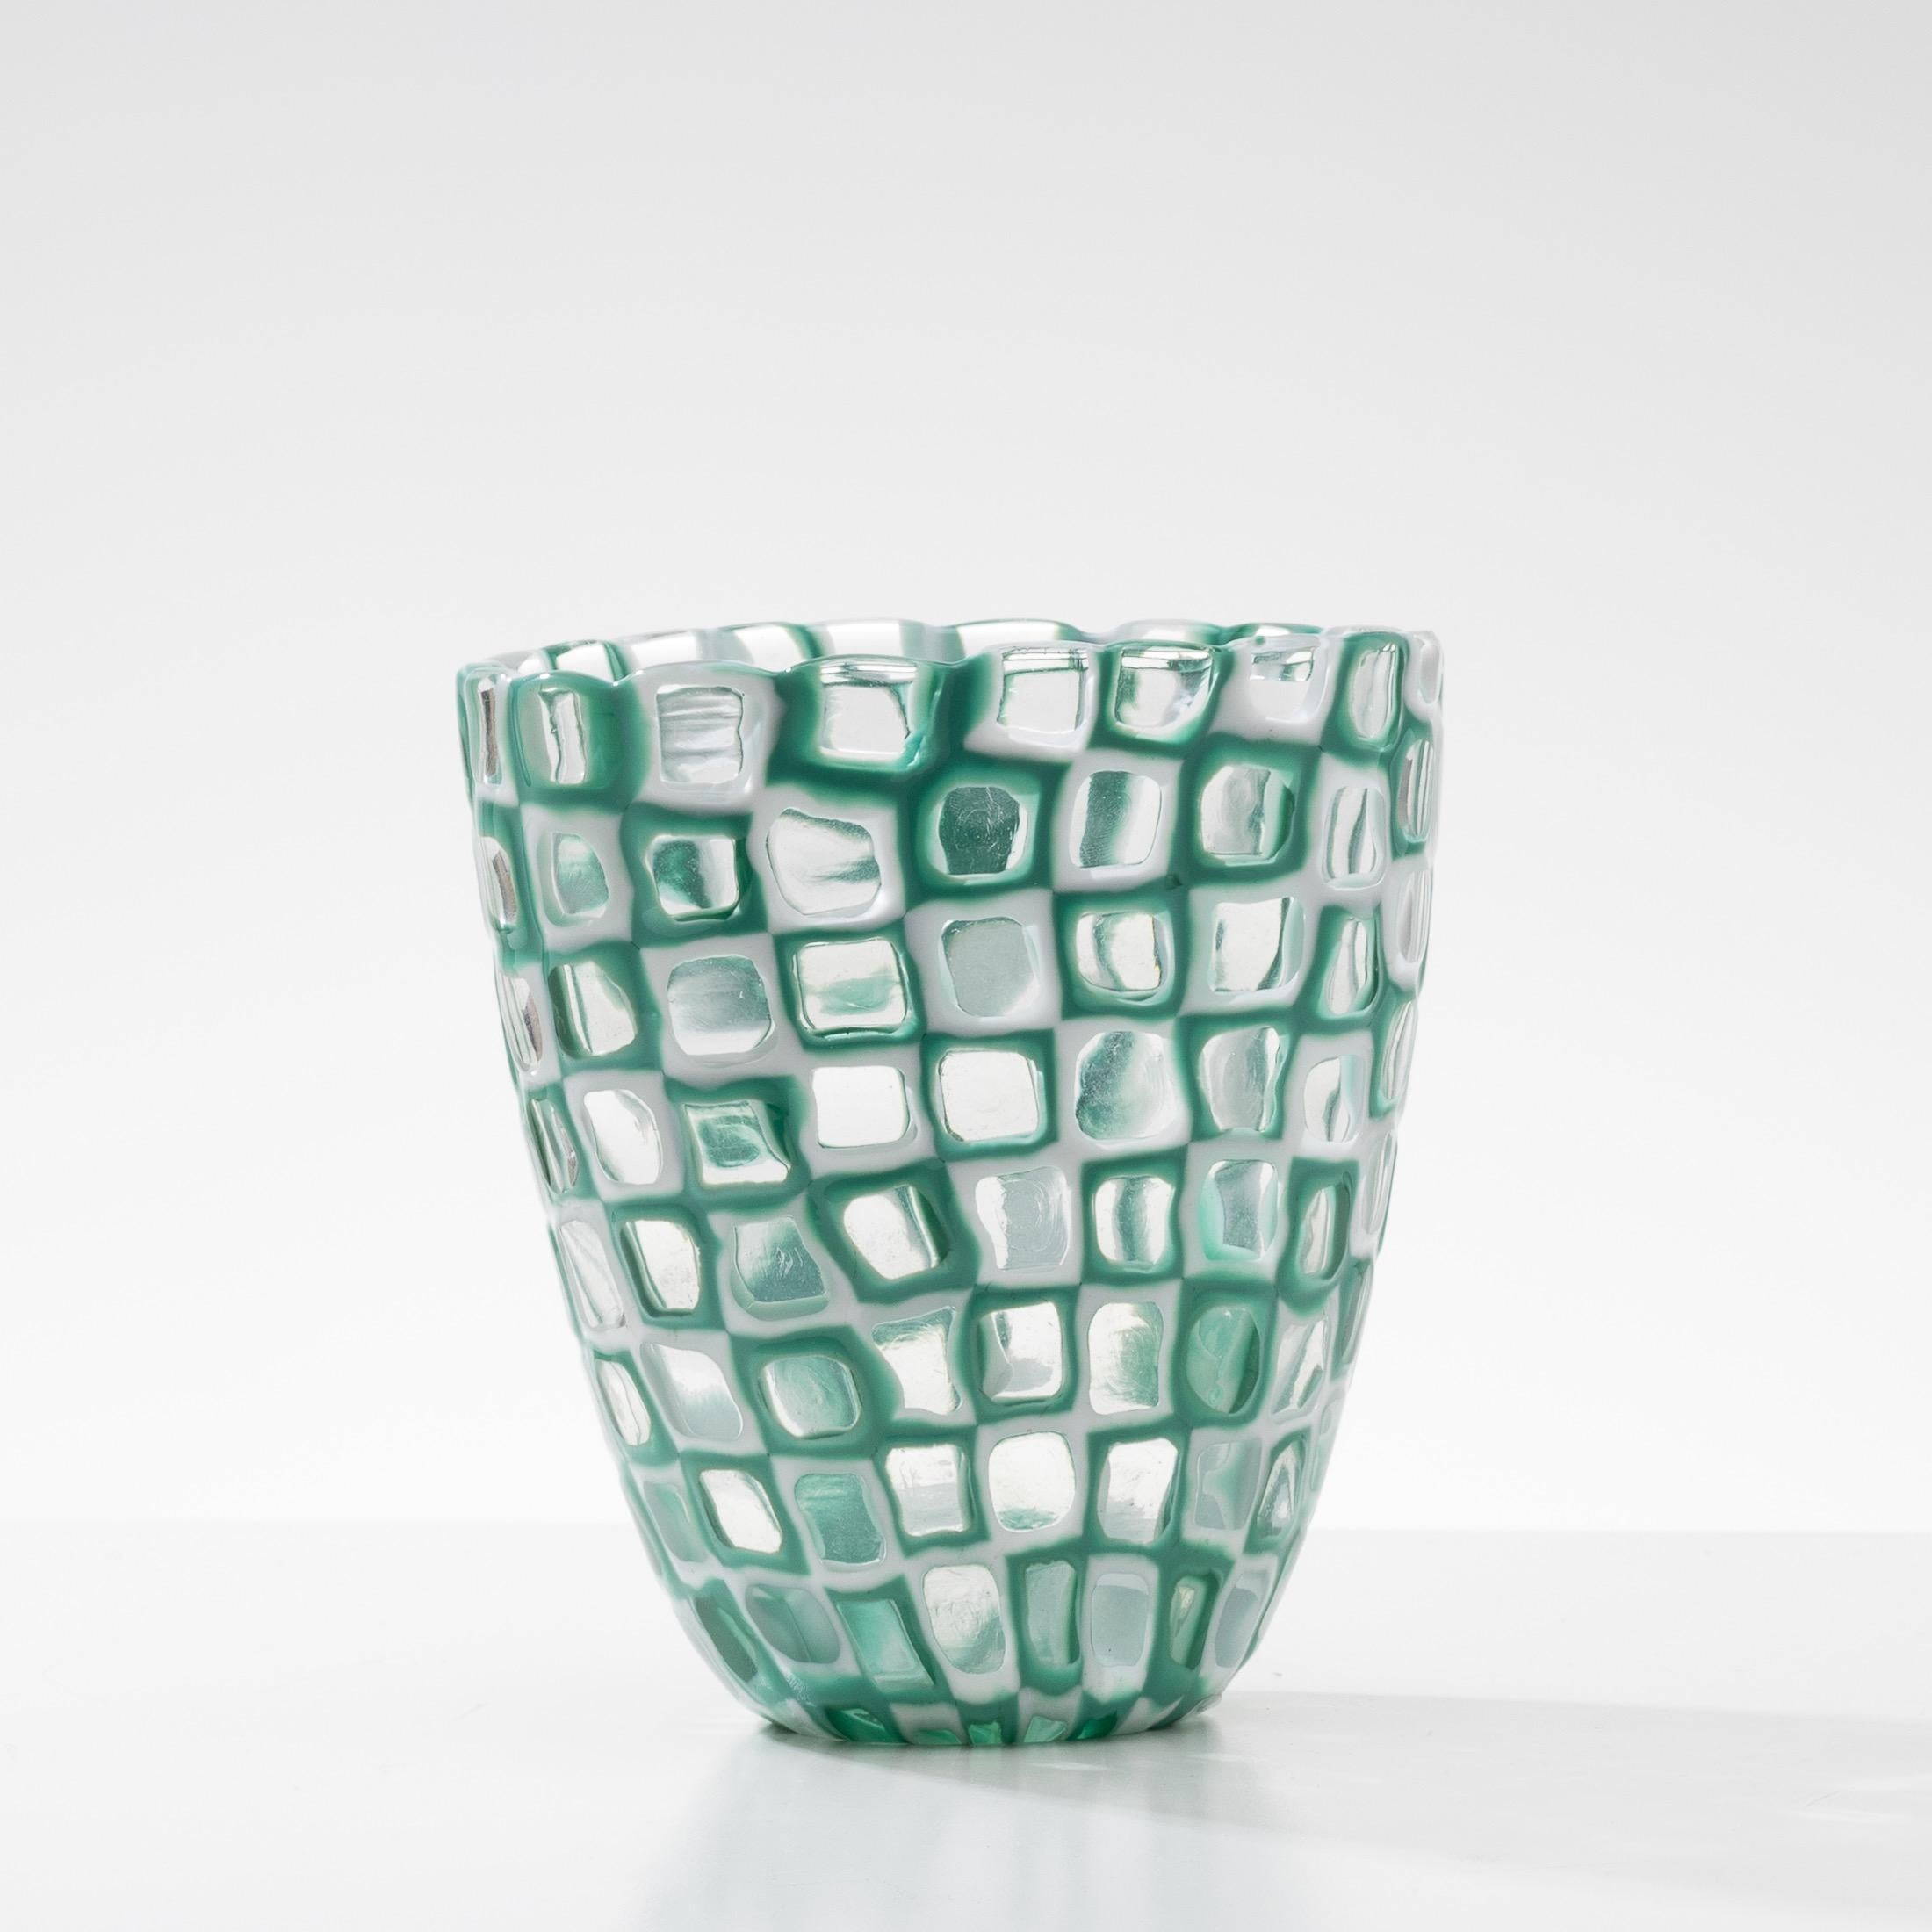 Occhi-Vase (Modell unter der Nummer 8524)
Occhi Vase von ovaler Form auf der Oberseite.
Bestehend aus einer Anordnung von Latimo-Glasmurrinen in der Mitte von Klarglas und grünen und klaren Glasmurrinen.
 